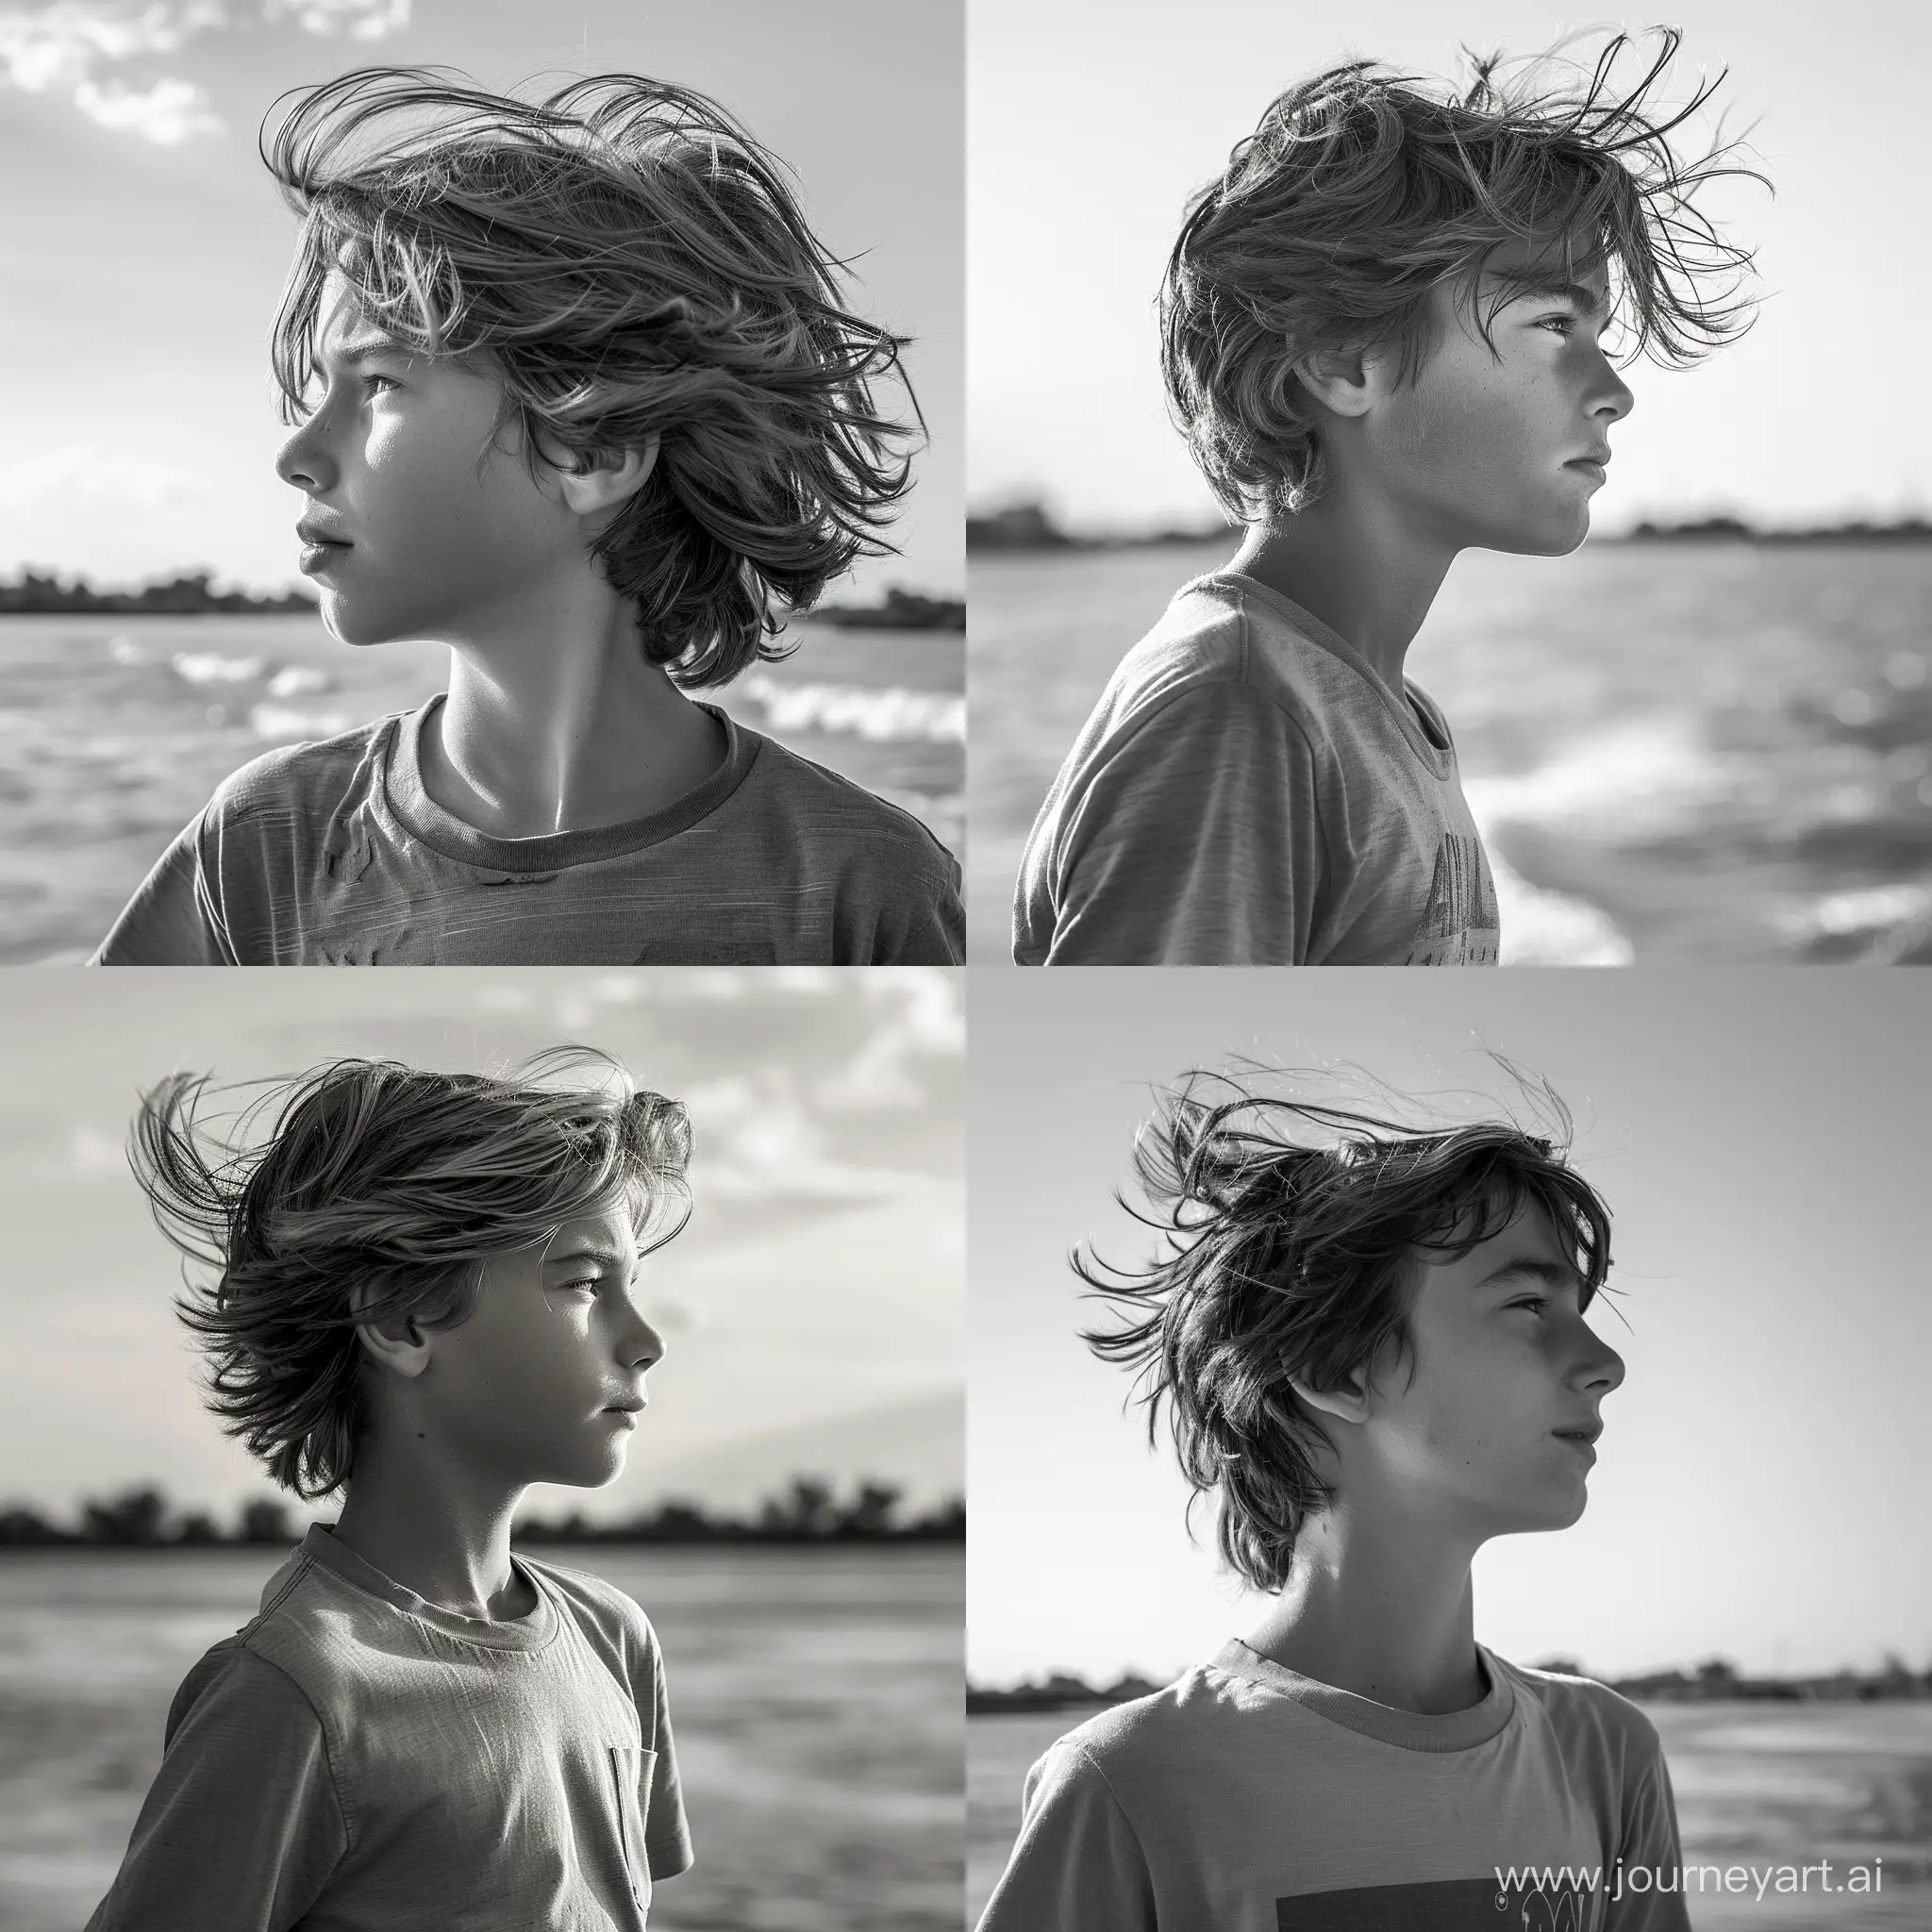 фото,мальчик 12 лет, профиль,по грудь, анфас, в майке,смотрит в даль,на фоне реки, волосы развивает ветер,яркий день